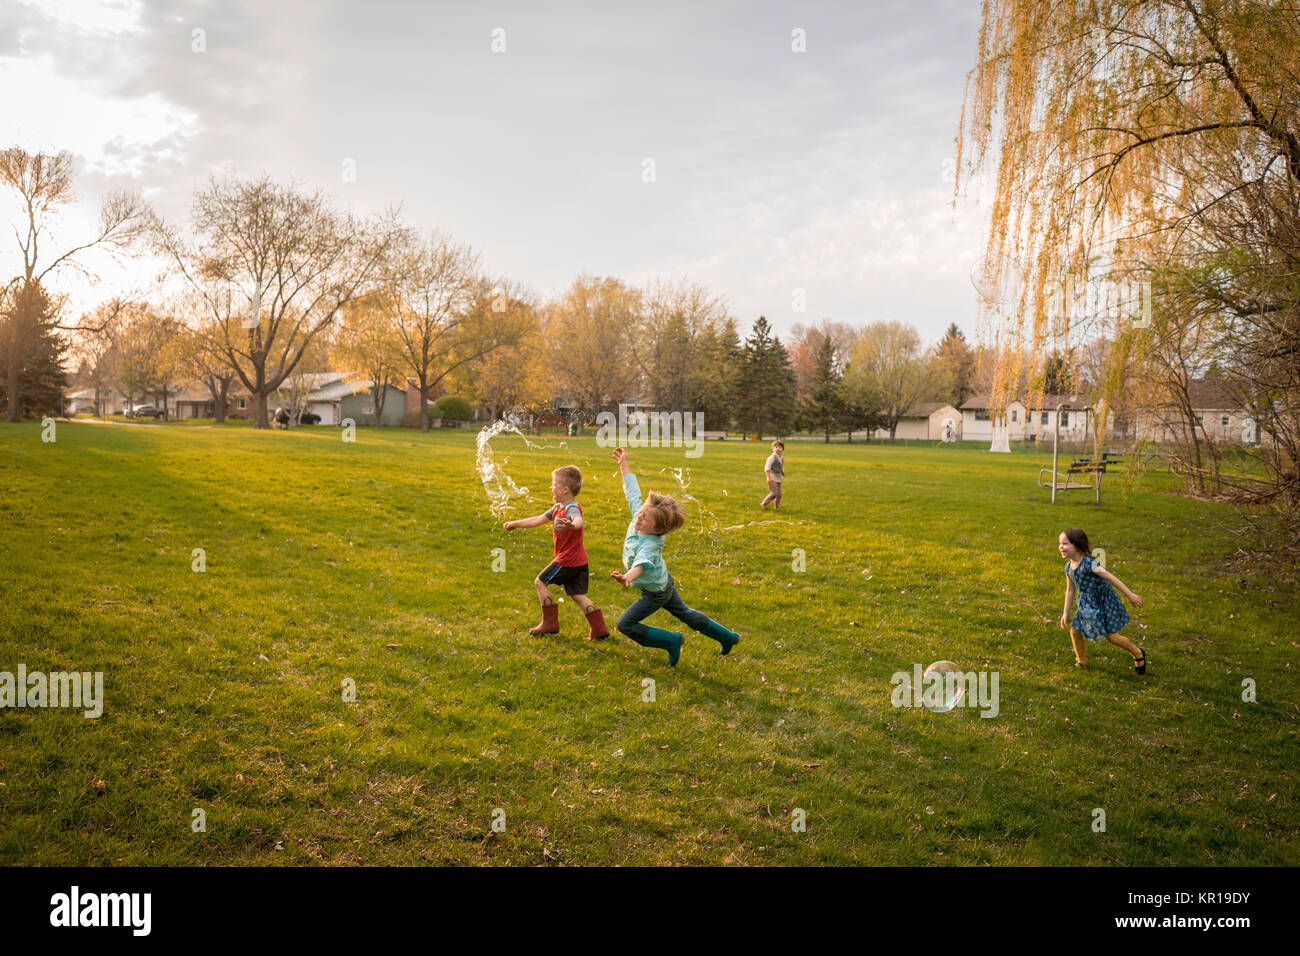 Vier Kinder jagen riesige Seifenblasen in einem öffentlichen Park Stockfoto